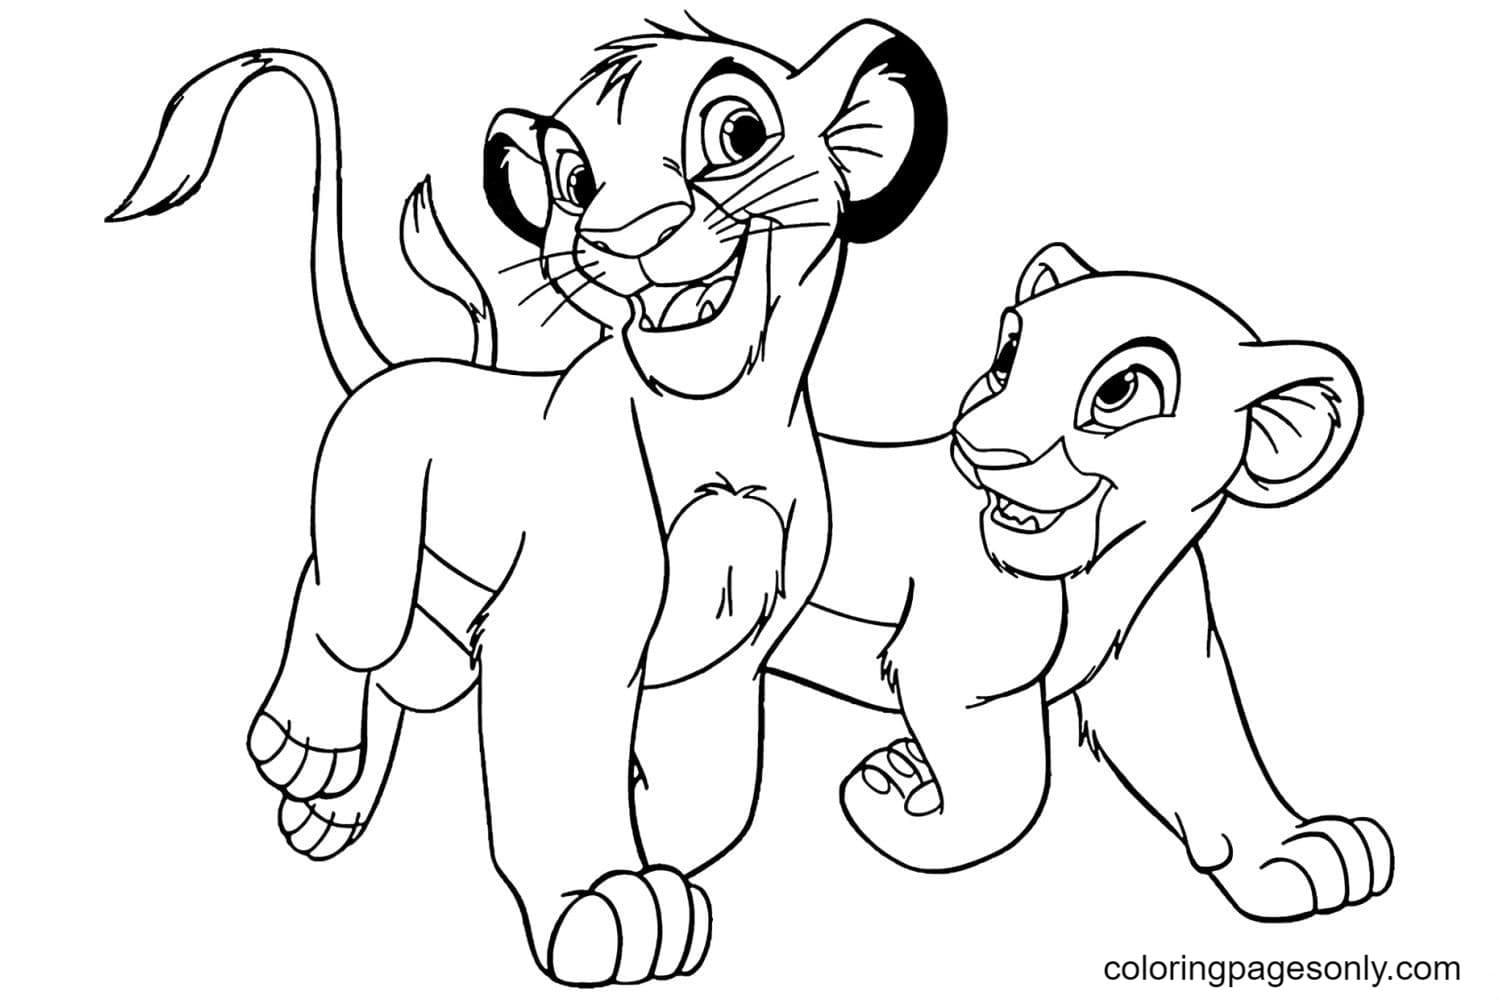 Simba et Nala du Roi Lion